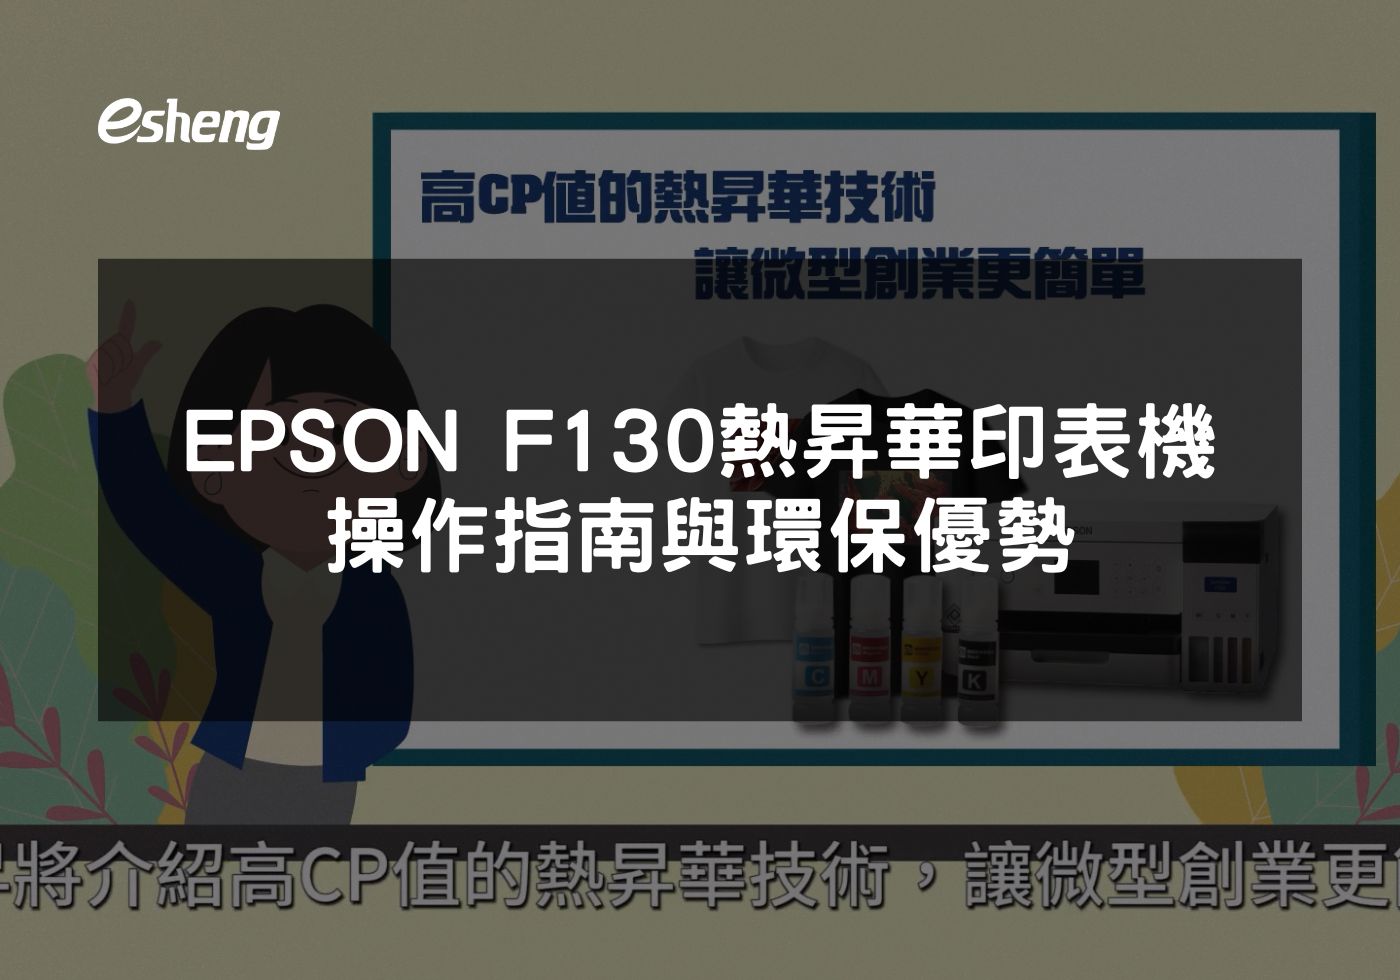 EPSON F130熱昇華印表機多材質高效印刷解決方案